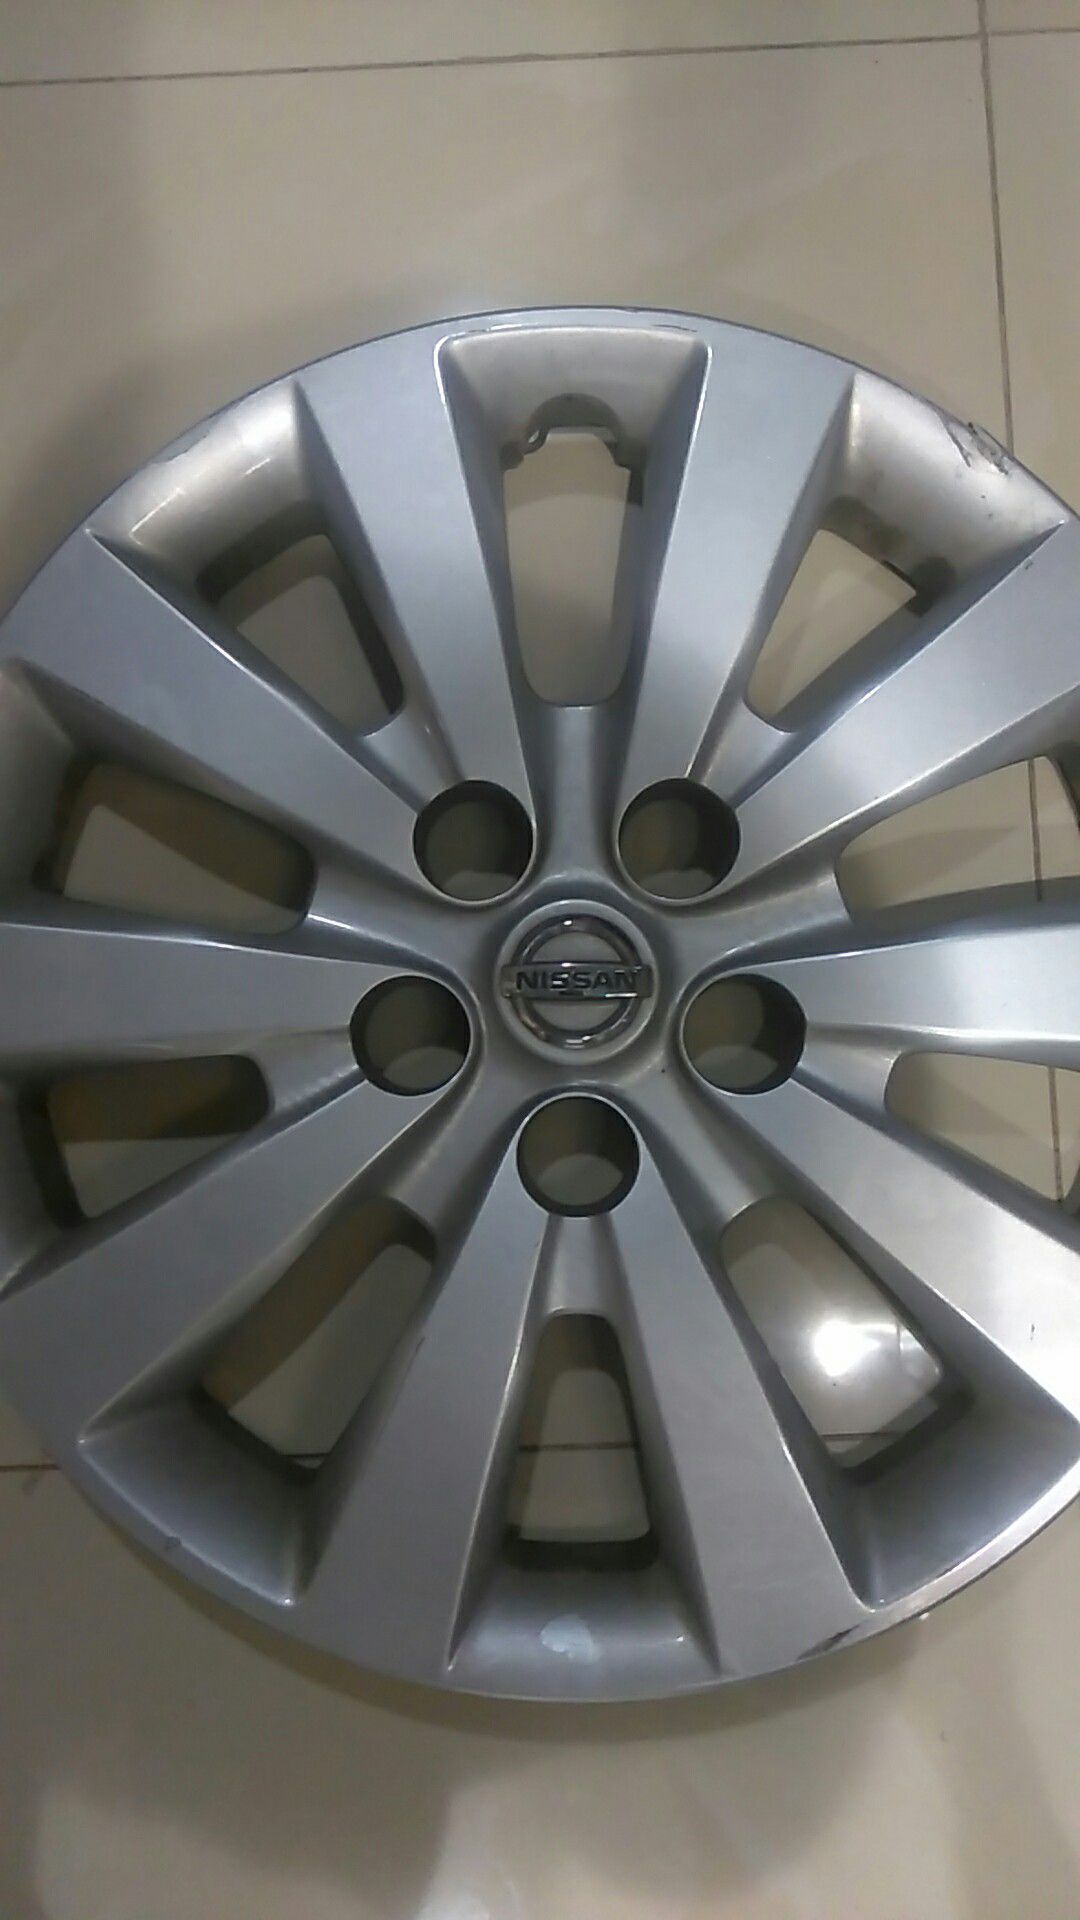 Nissan hubcap 17in